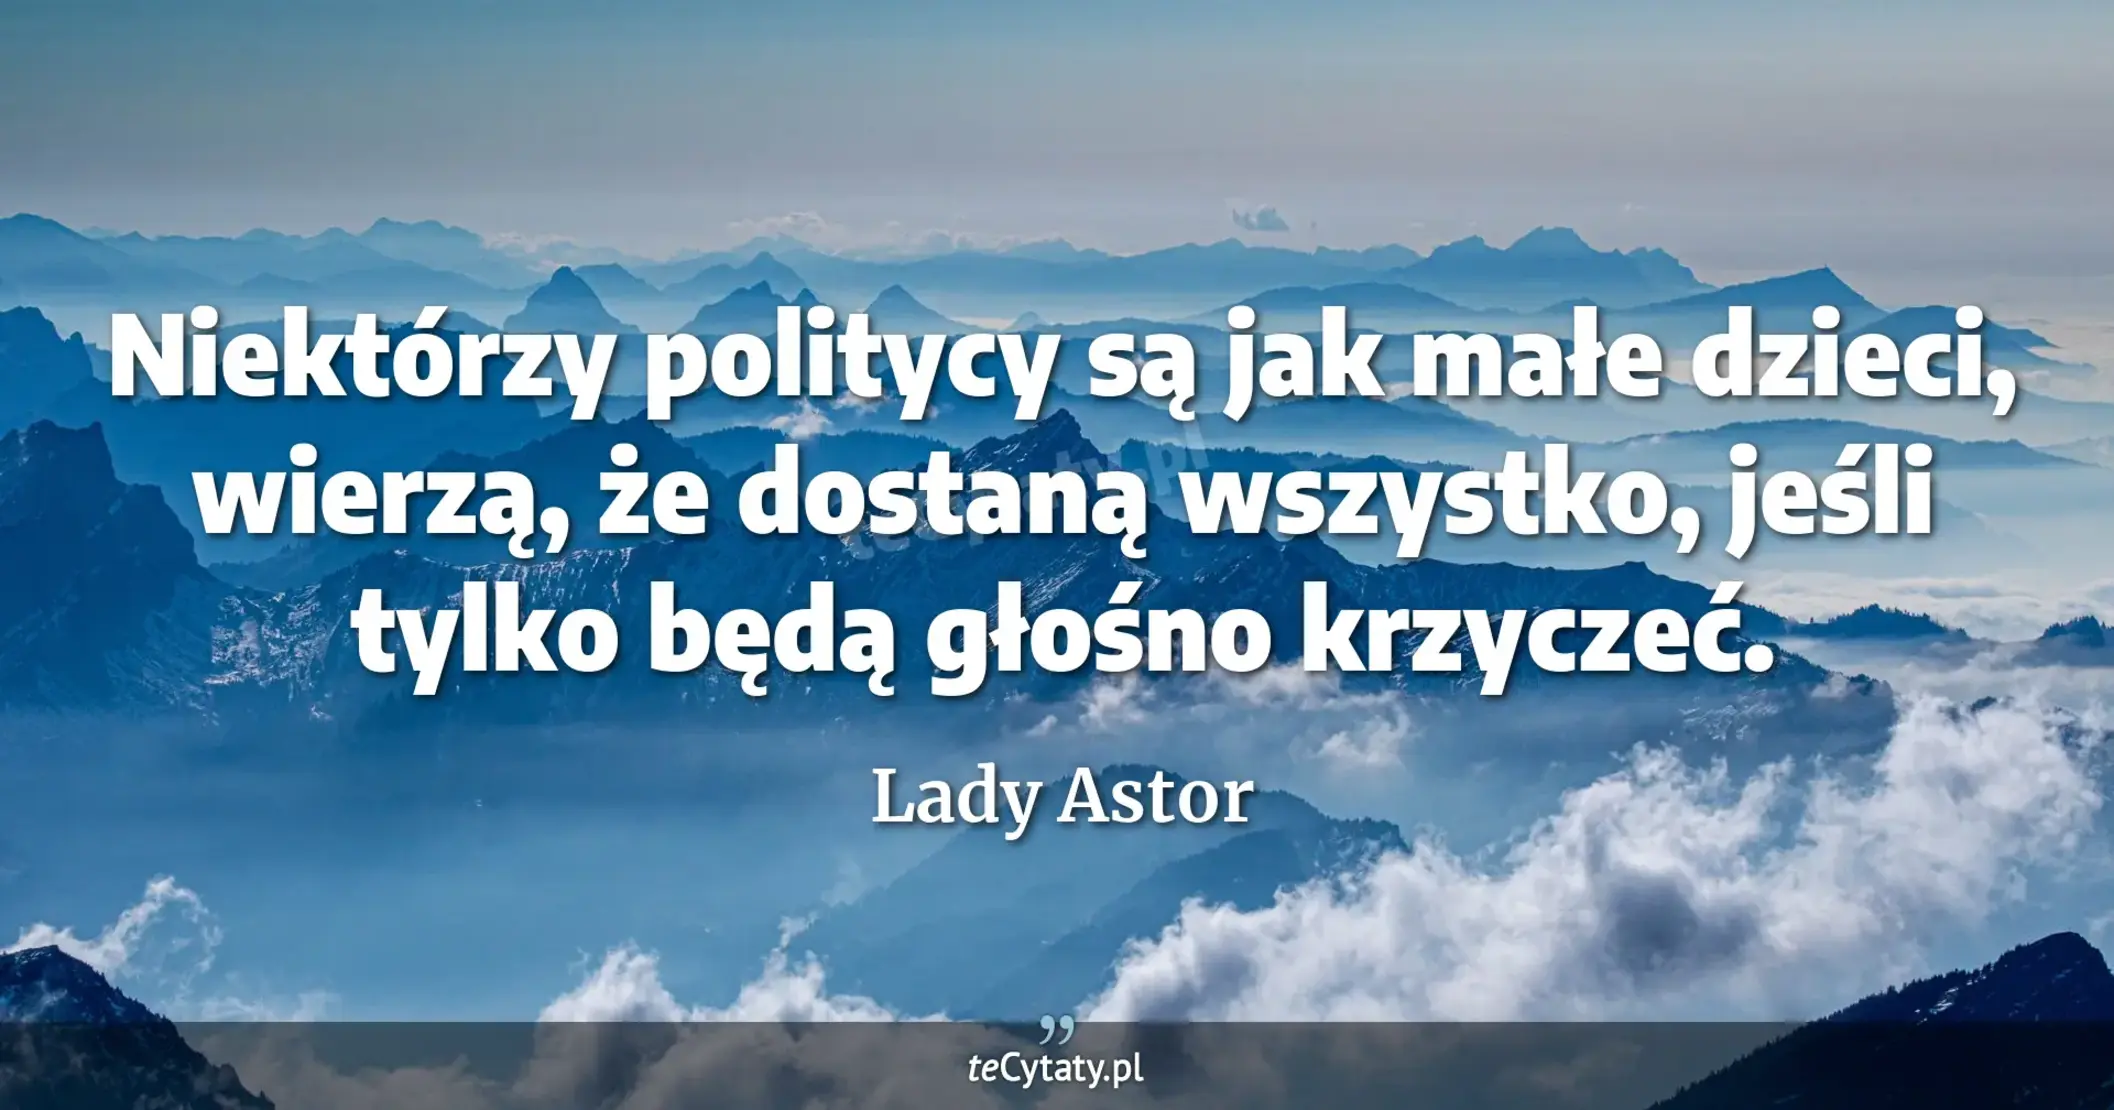 Niektórzy politycy są jak małe dzieci, wierzą, że dostaną wszystko, jeśli tylko będą głośno krzyczeć. - Lady Astor